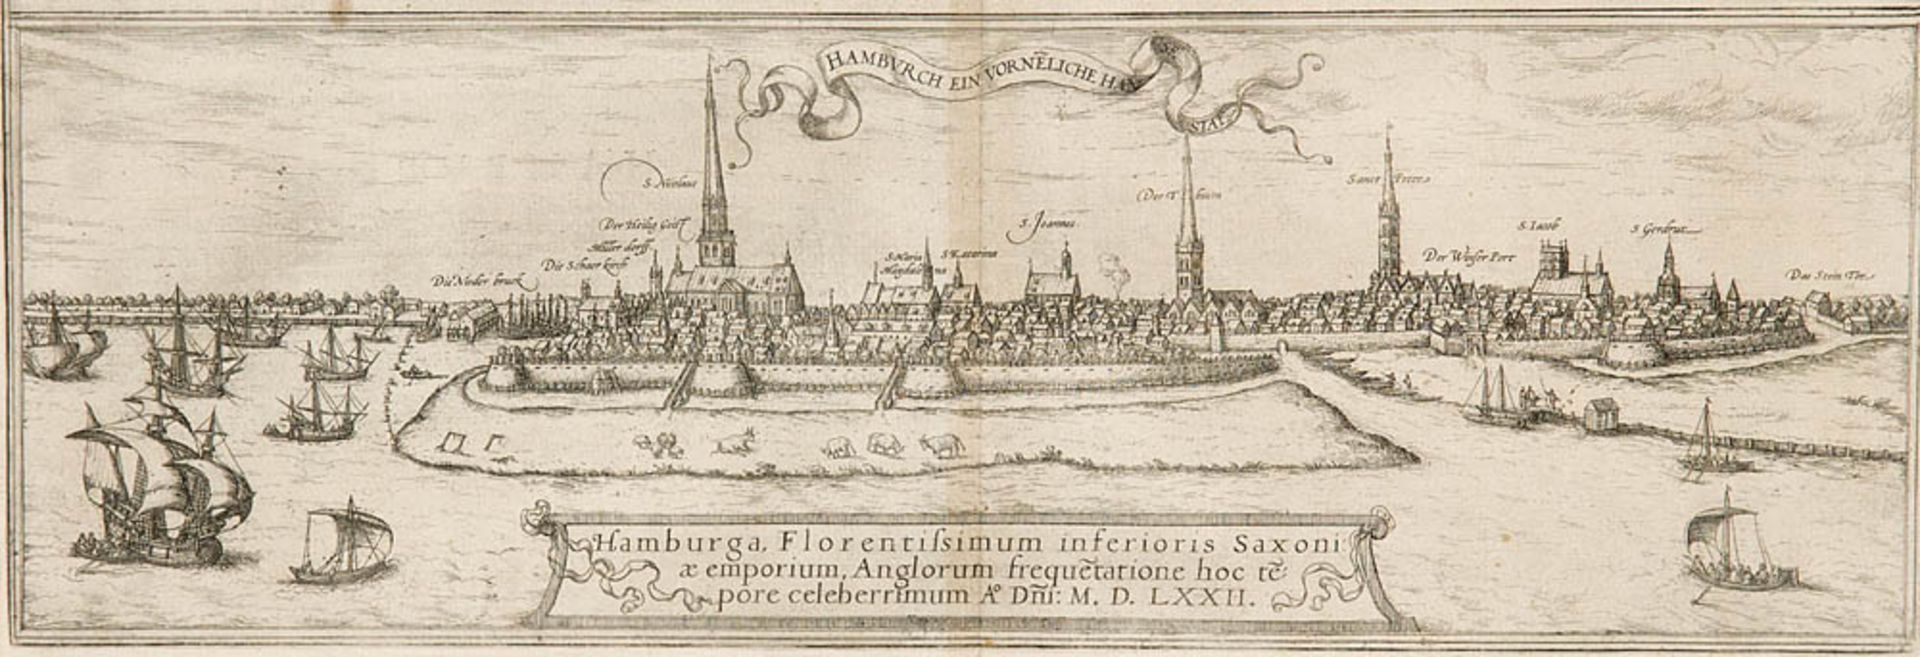 Hamburg - - Hamburga, Florentissimum inferioris Saxoni ... 1572. Kupferstichansicht aus Braun und